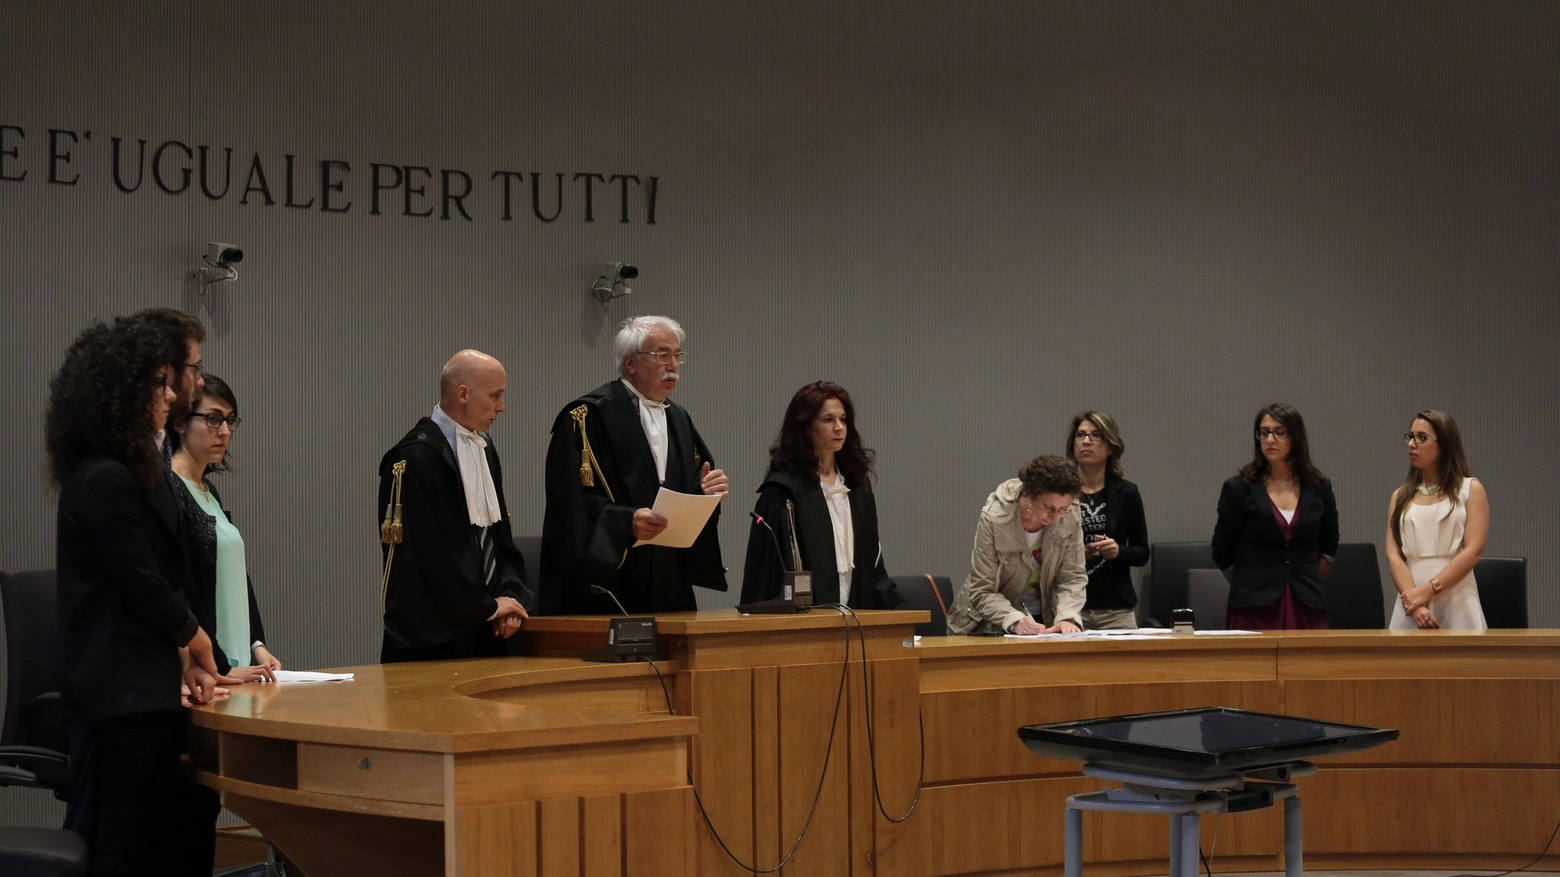 La lettura della sentenza (Giuseppe Cabras/New Press Photo)